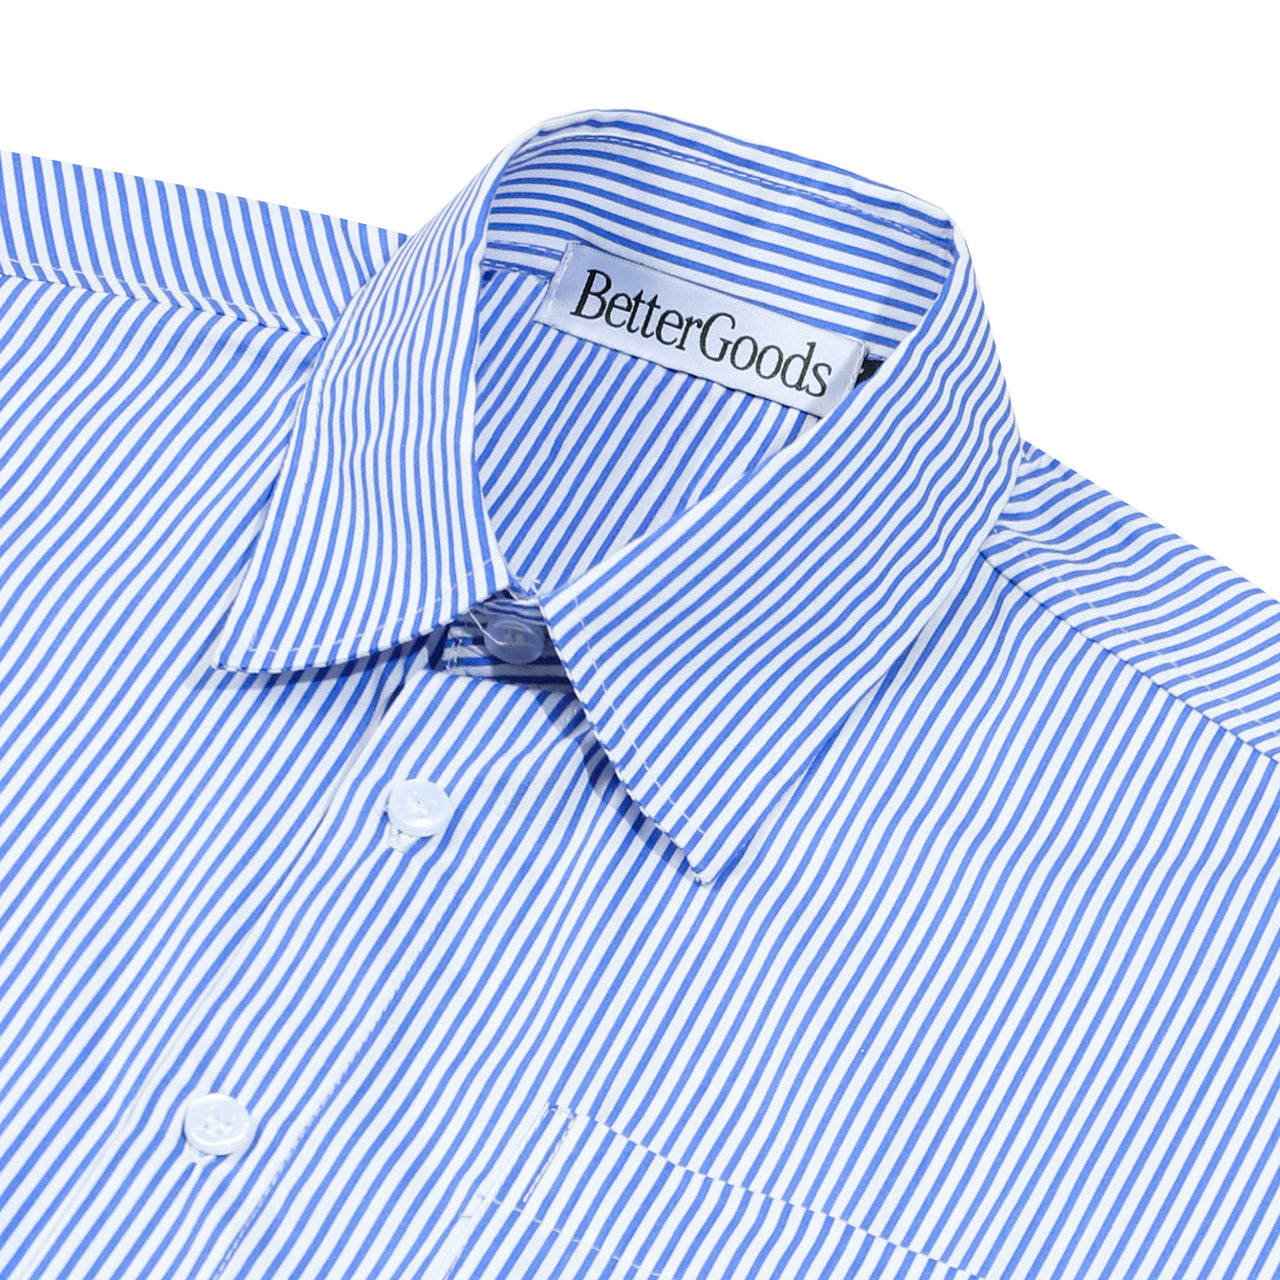 Better Goods - Lay Oxford Short Sleeve Shirt Blue